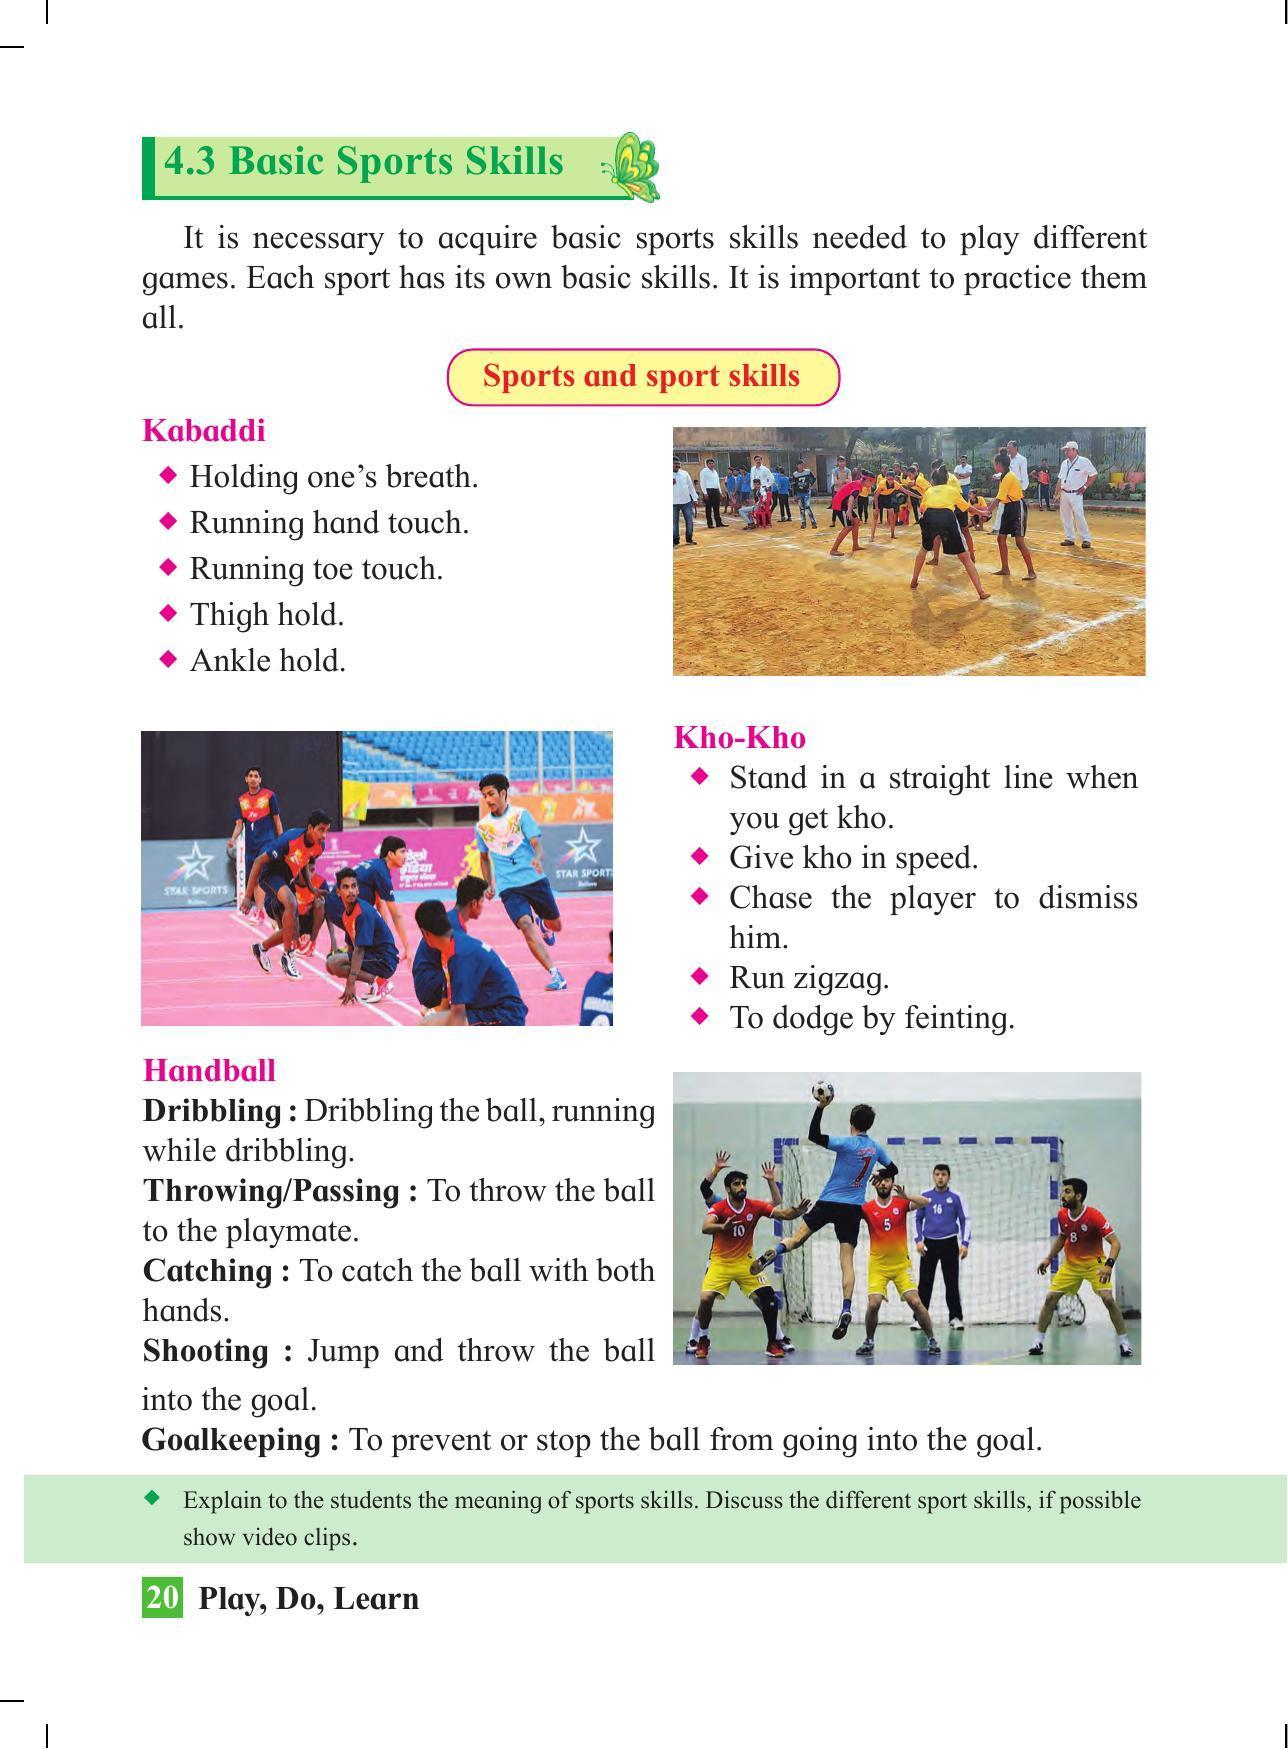 Maharashtra Board Class 4 Play Do Learn (English Medium) Textbook - Page 29